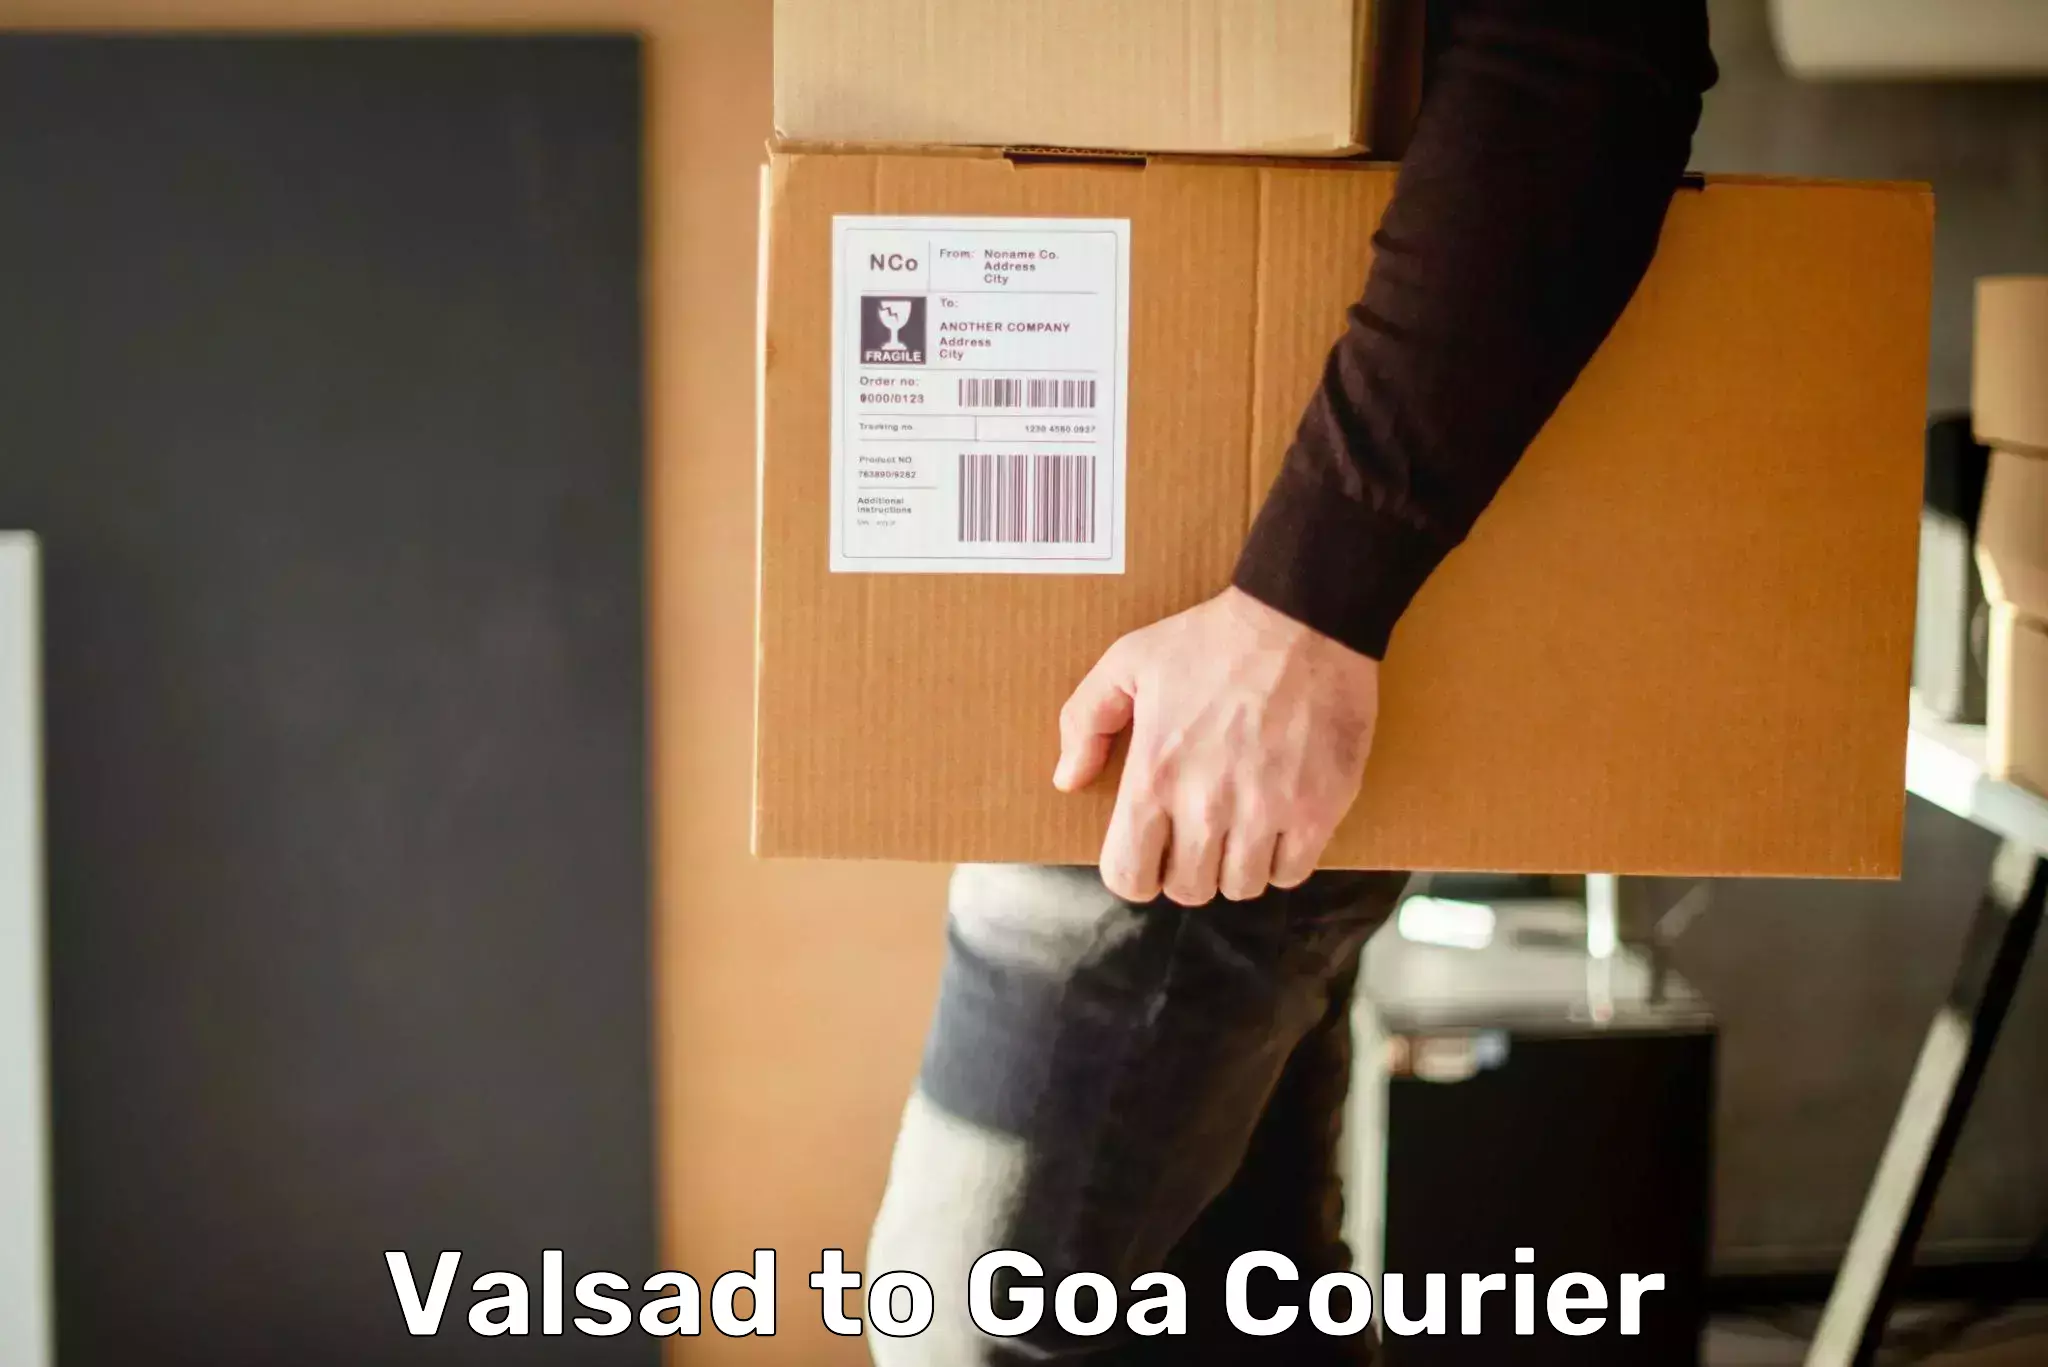 Courier app Valsad to Goa